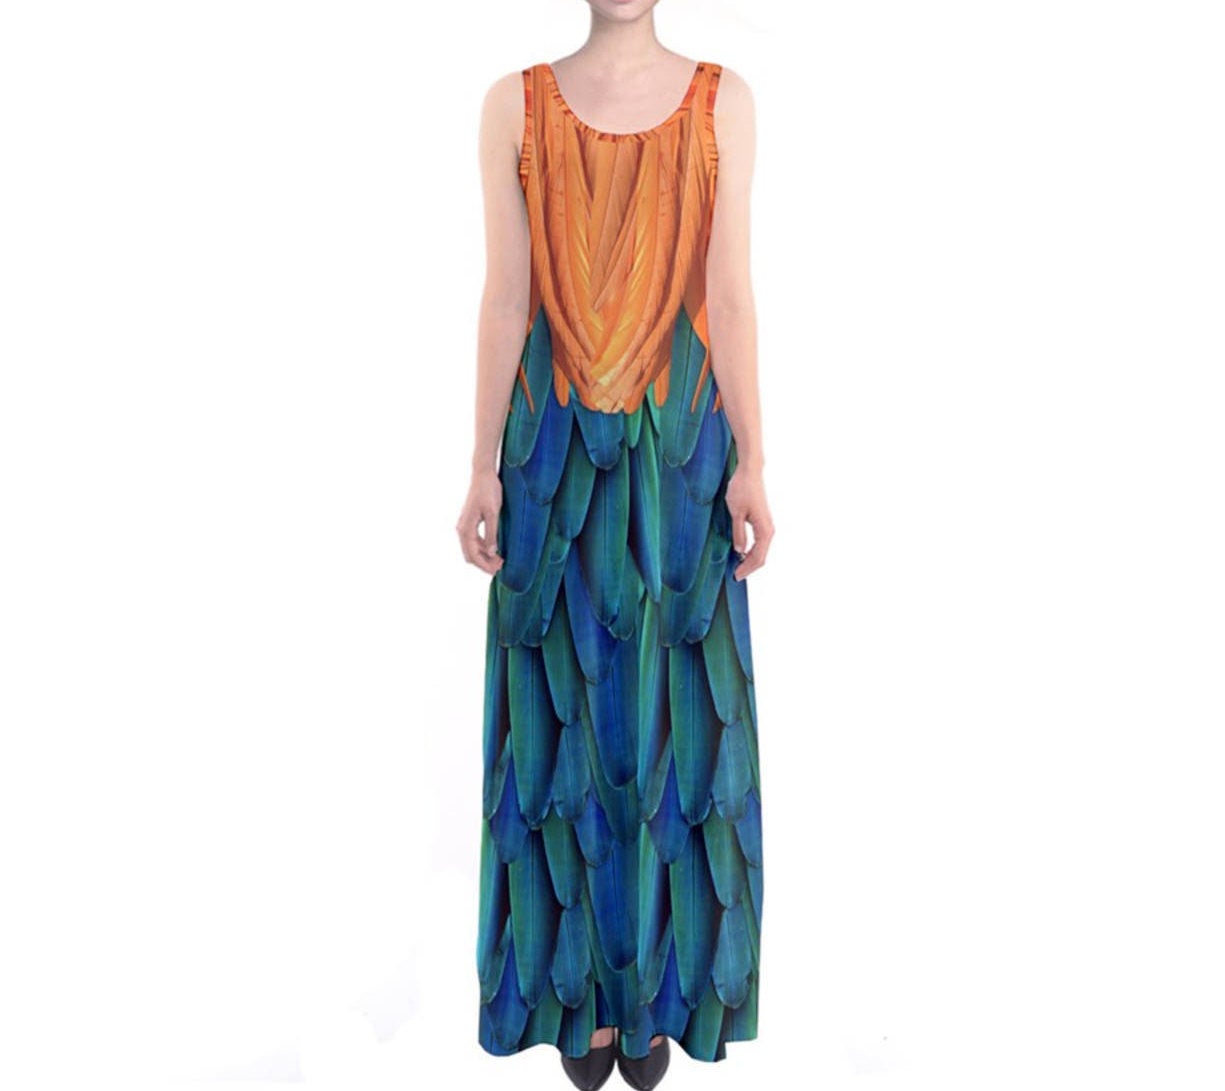 Heihei Moana Inspired Sleeveless Maxi Dress